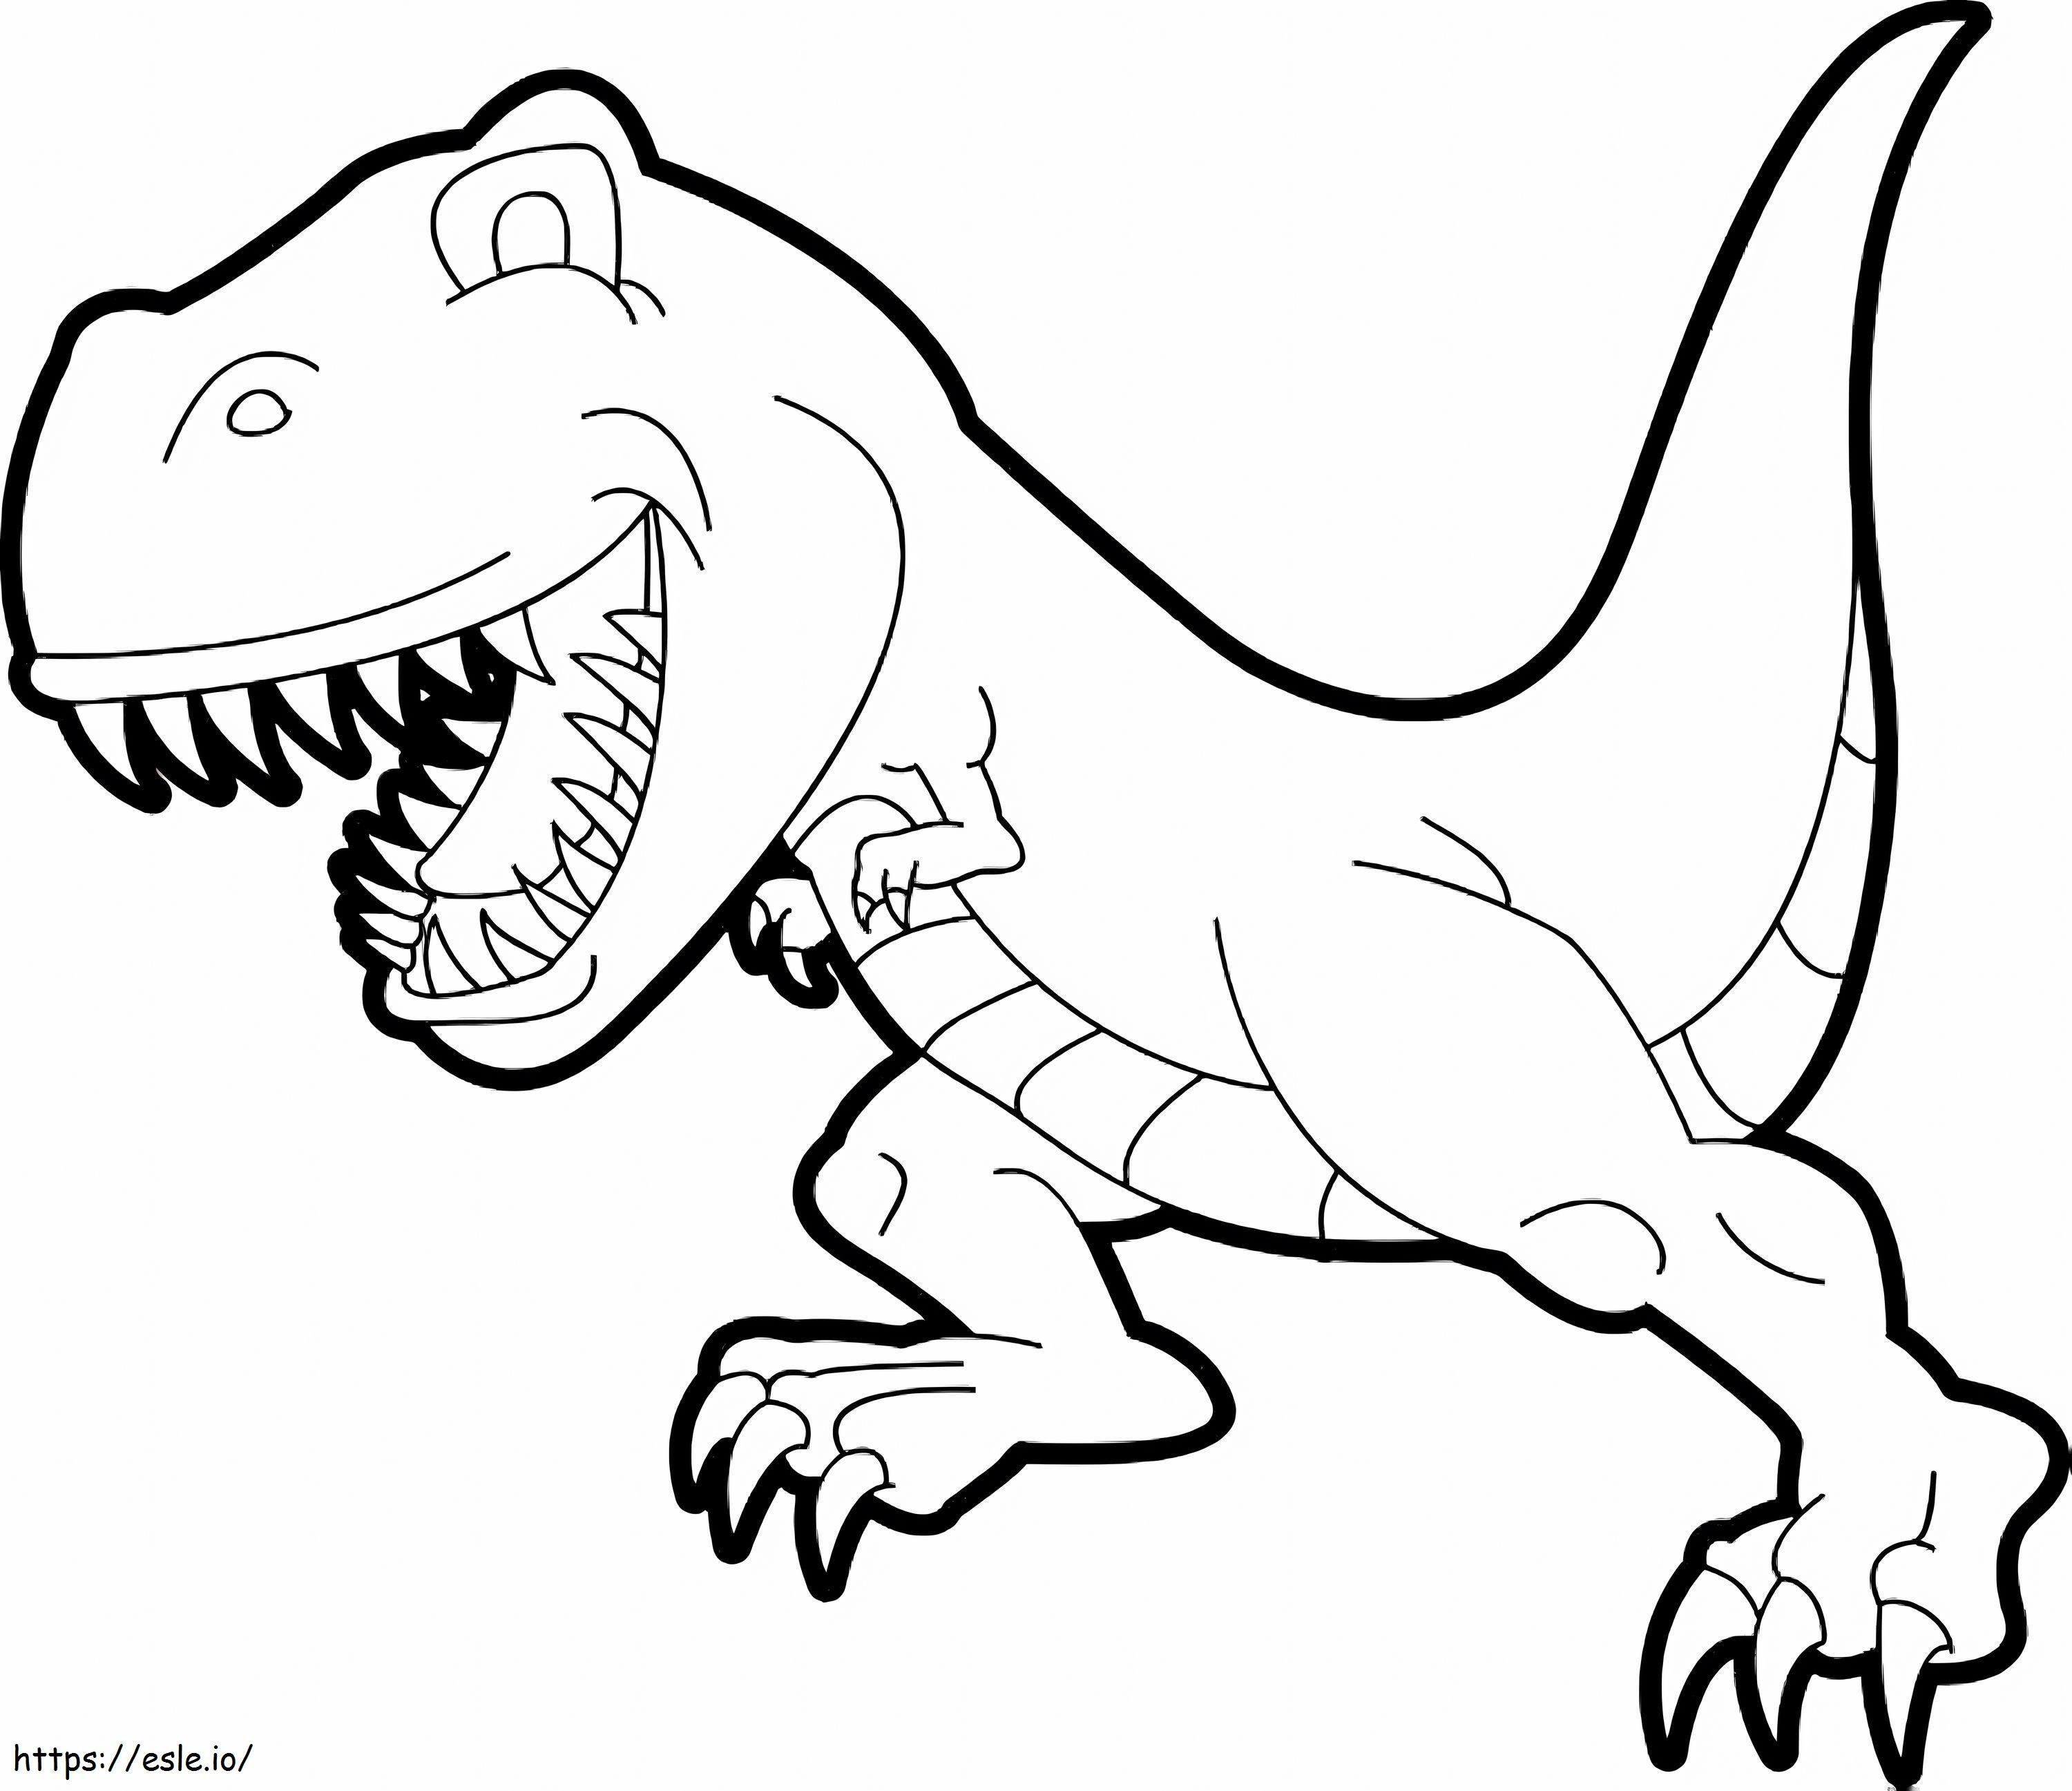 1539674613 Gambar T Rex Inspirasi Dinosaurus Dinosaurus Sederhana Baru Gambar Terbaik T Rex Gambar Mewarnai